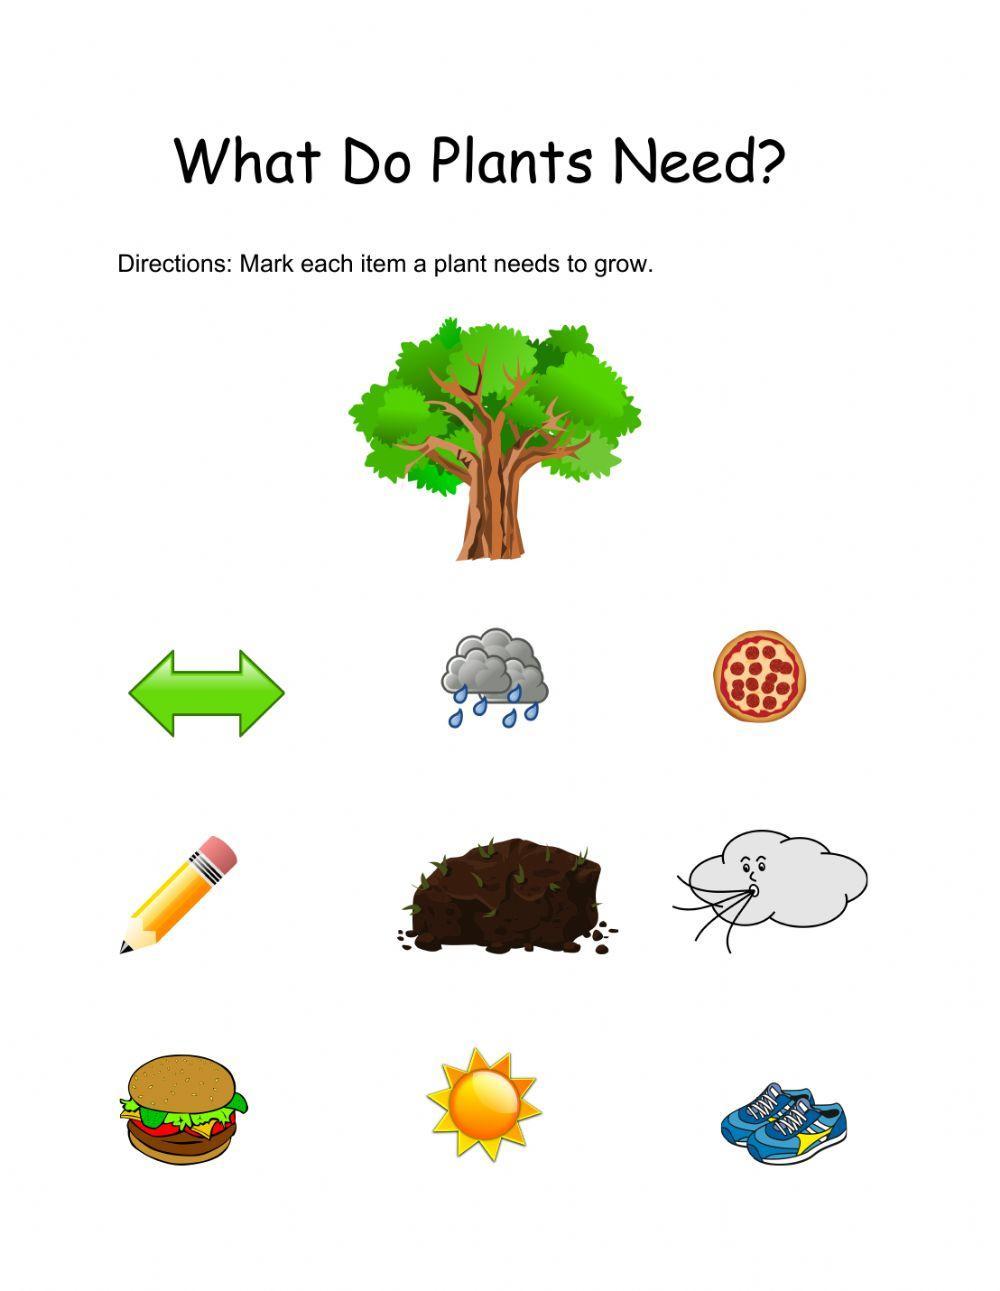 Plants needs